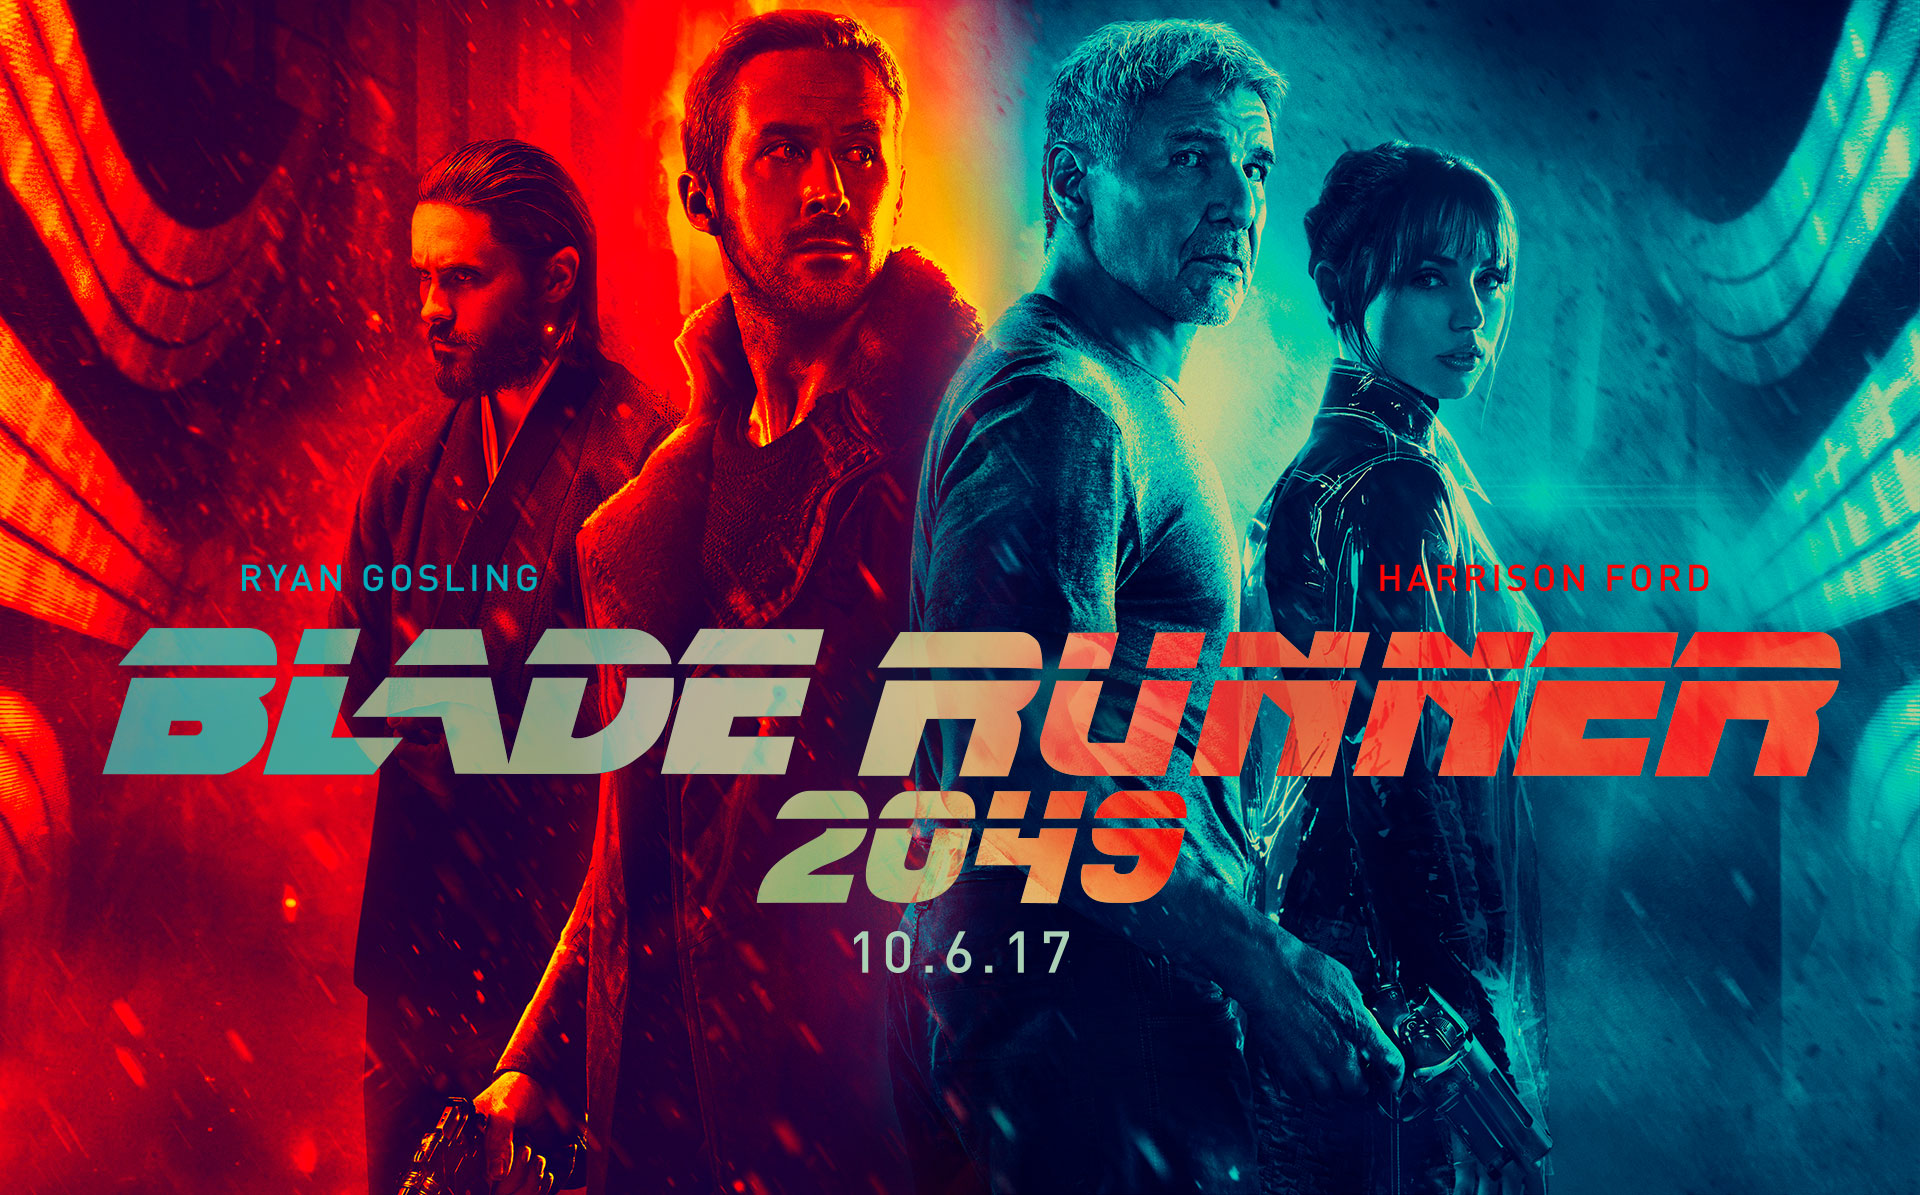 Blade Runner 2049 (2017) | Impresiones de un traidor